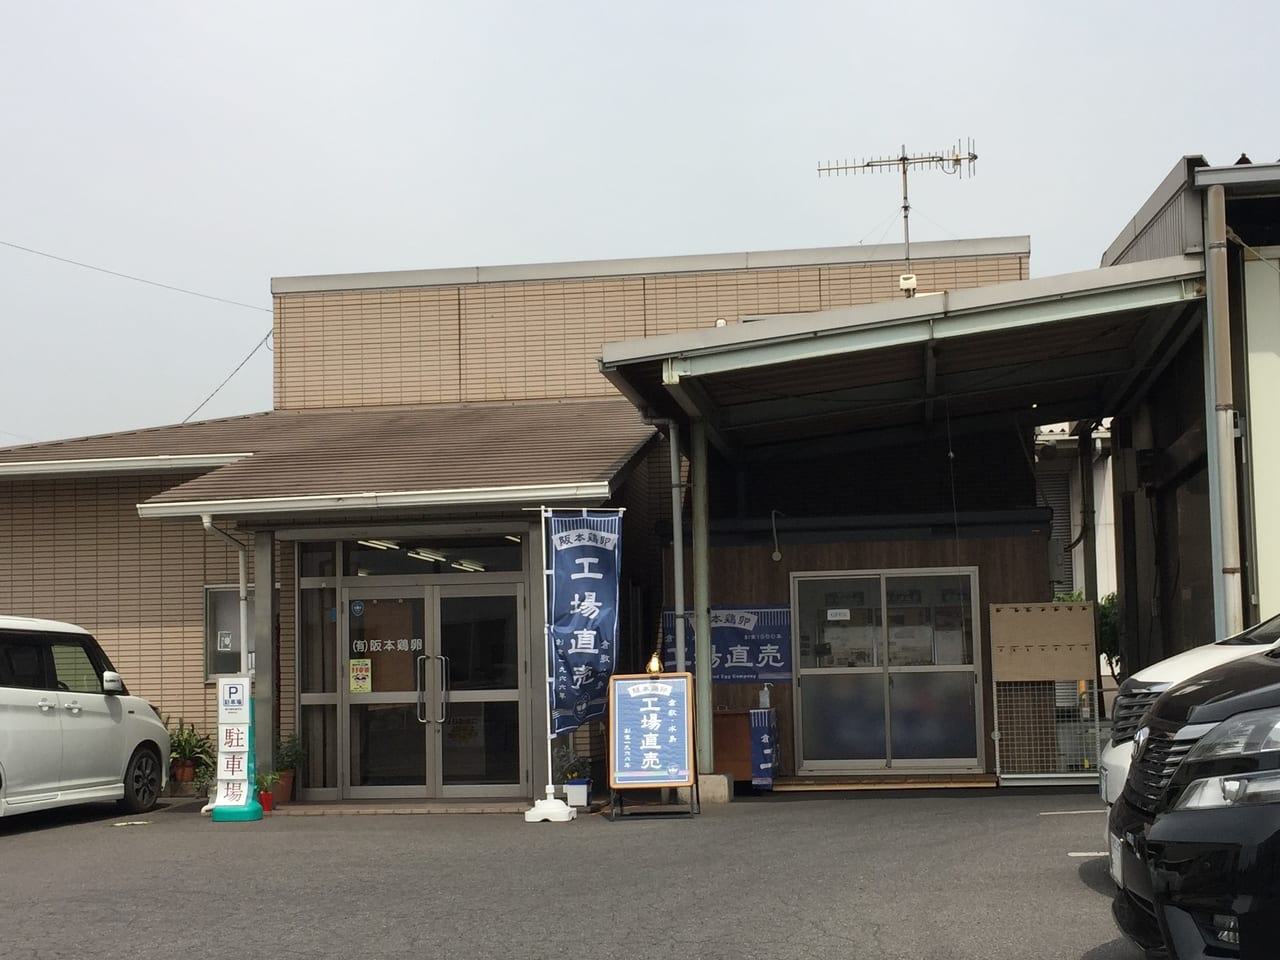 サンドイッチ 阪本 鶏卵 倉敷の卵会社が工場直売所開設 「たまごサンド」に開店前の行列も